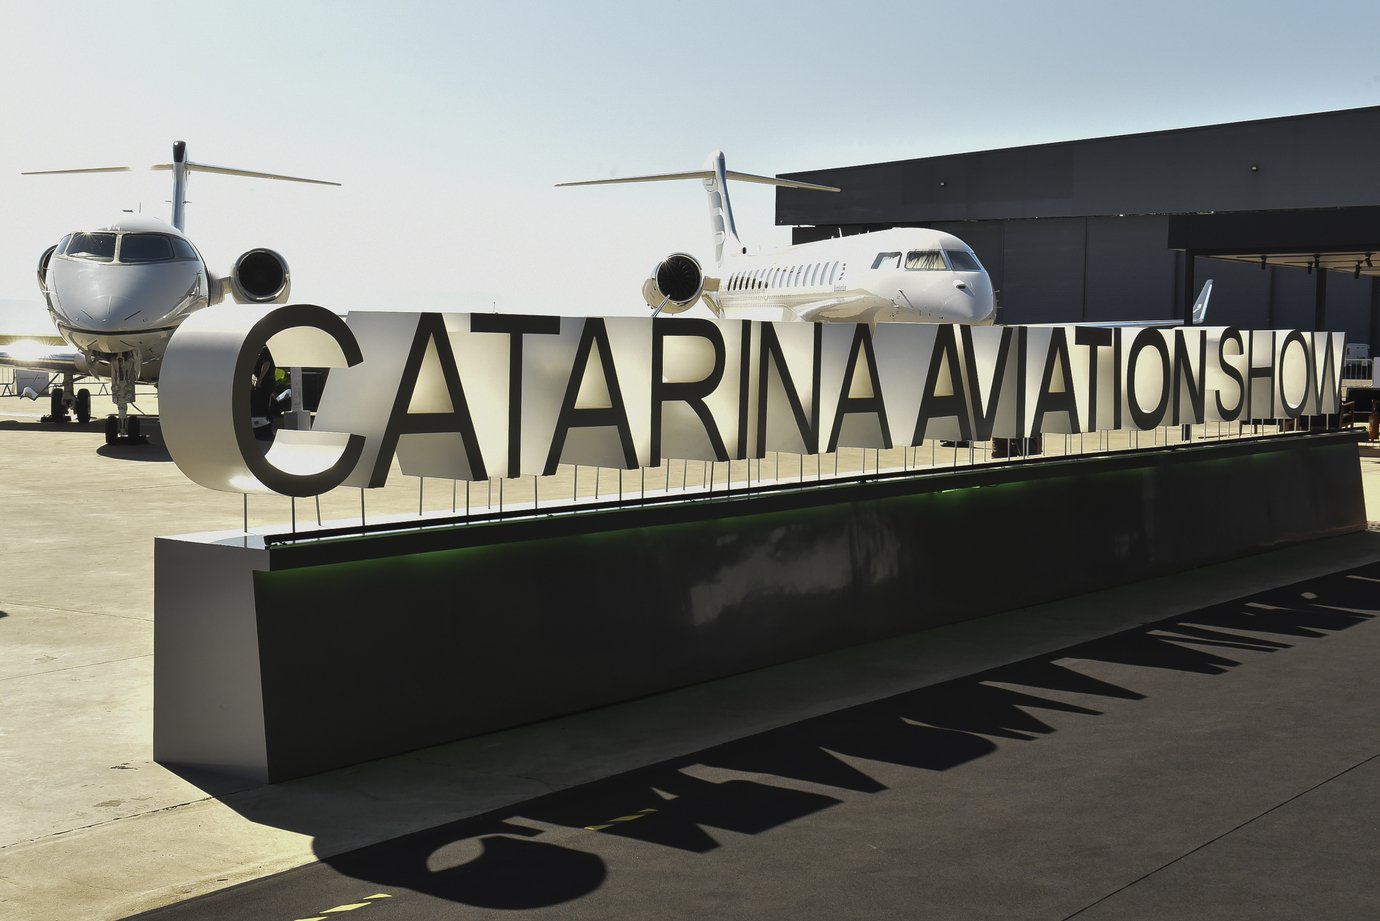 Catarina Aviation Show vira queridinho de marcas da aviação